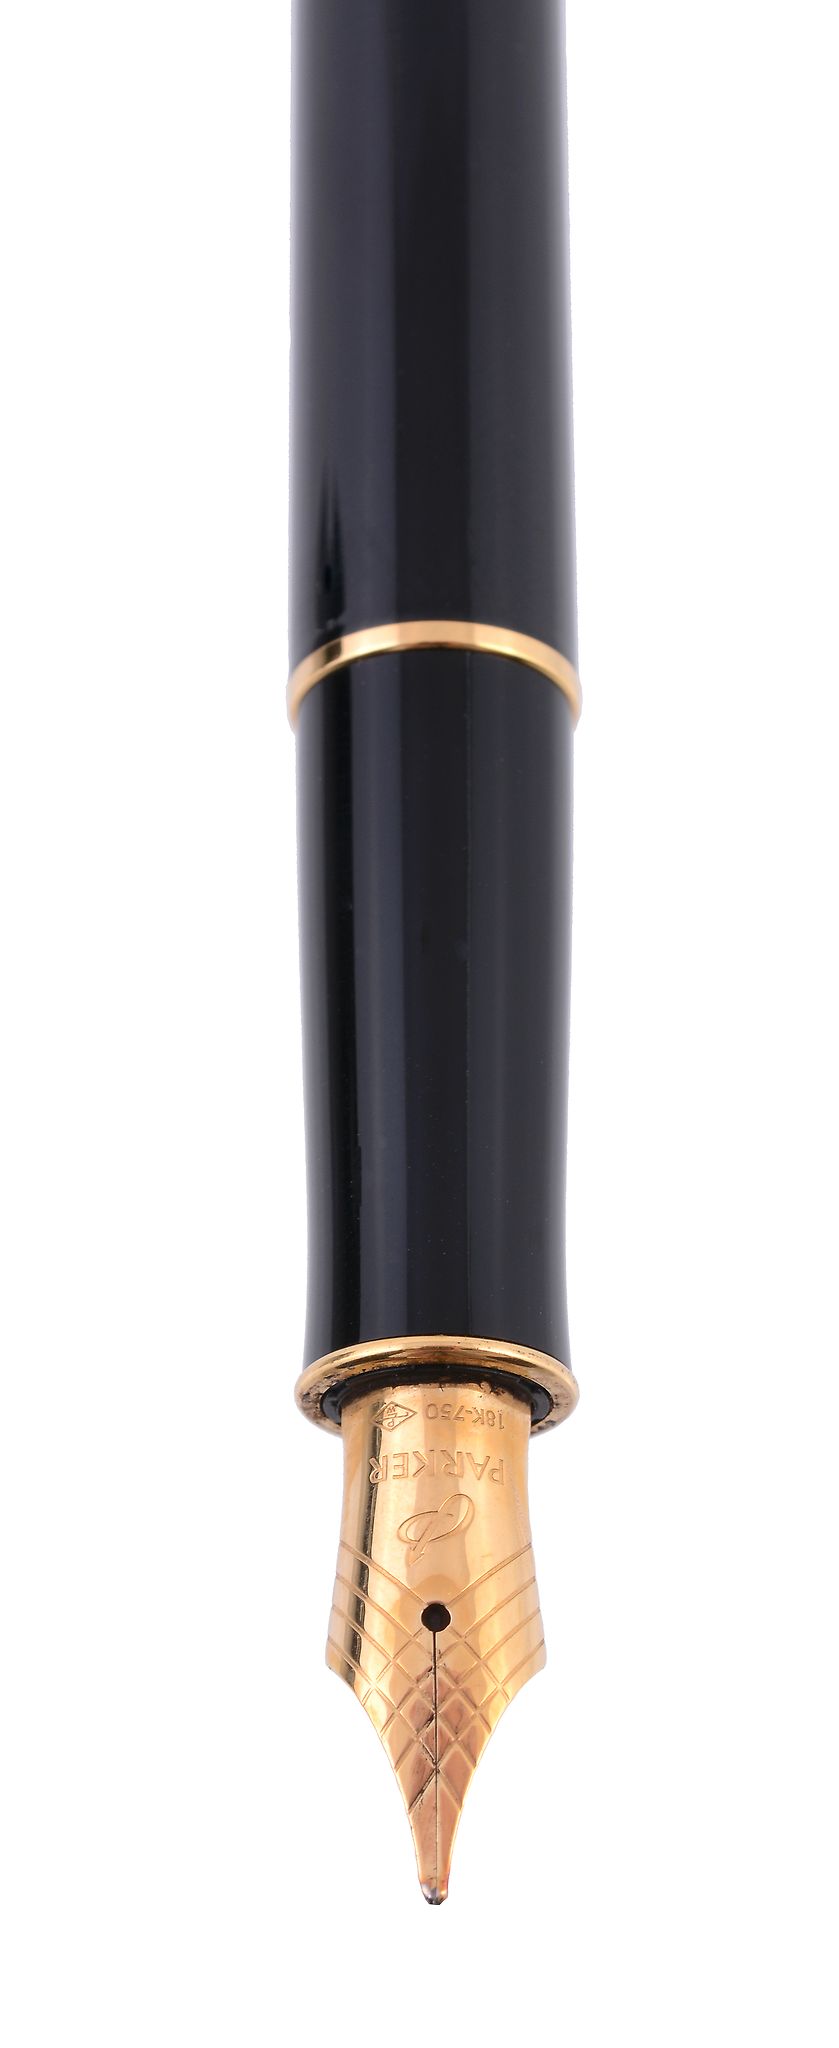 Parker, Sonnet, a black lacquer fountain pen, with a black lacquer cap barrel  Parker, Sonnet, a - Image 3 of 3